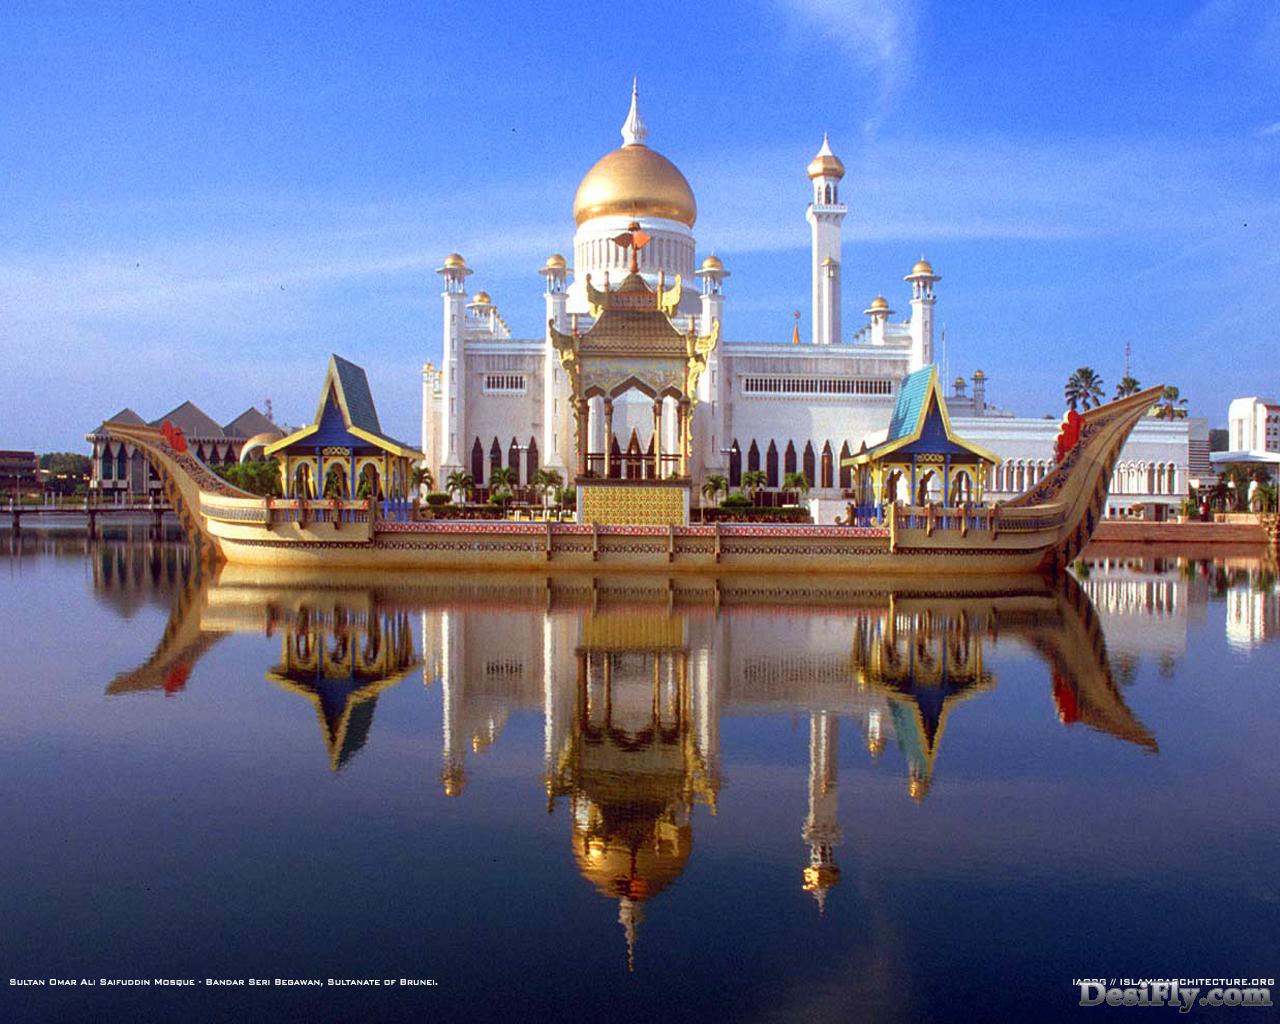  gambar  gambar islami  Indonesiadalamtulisan Terbaru 2014